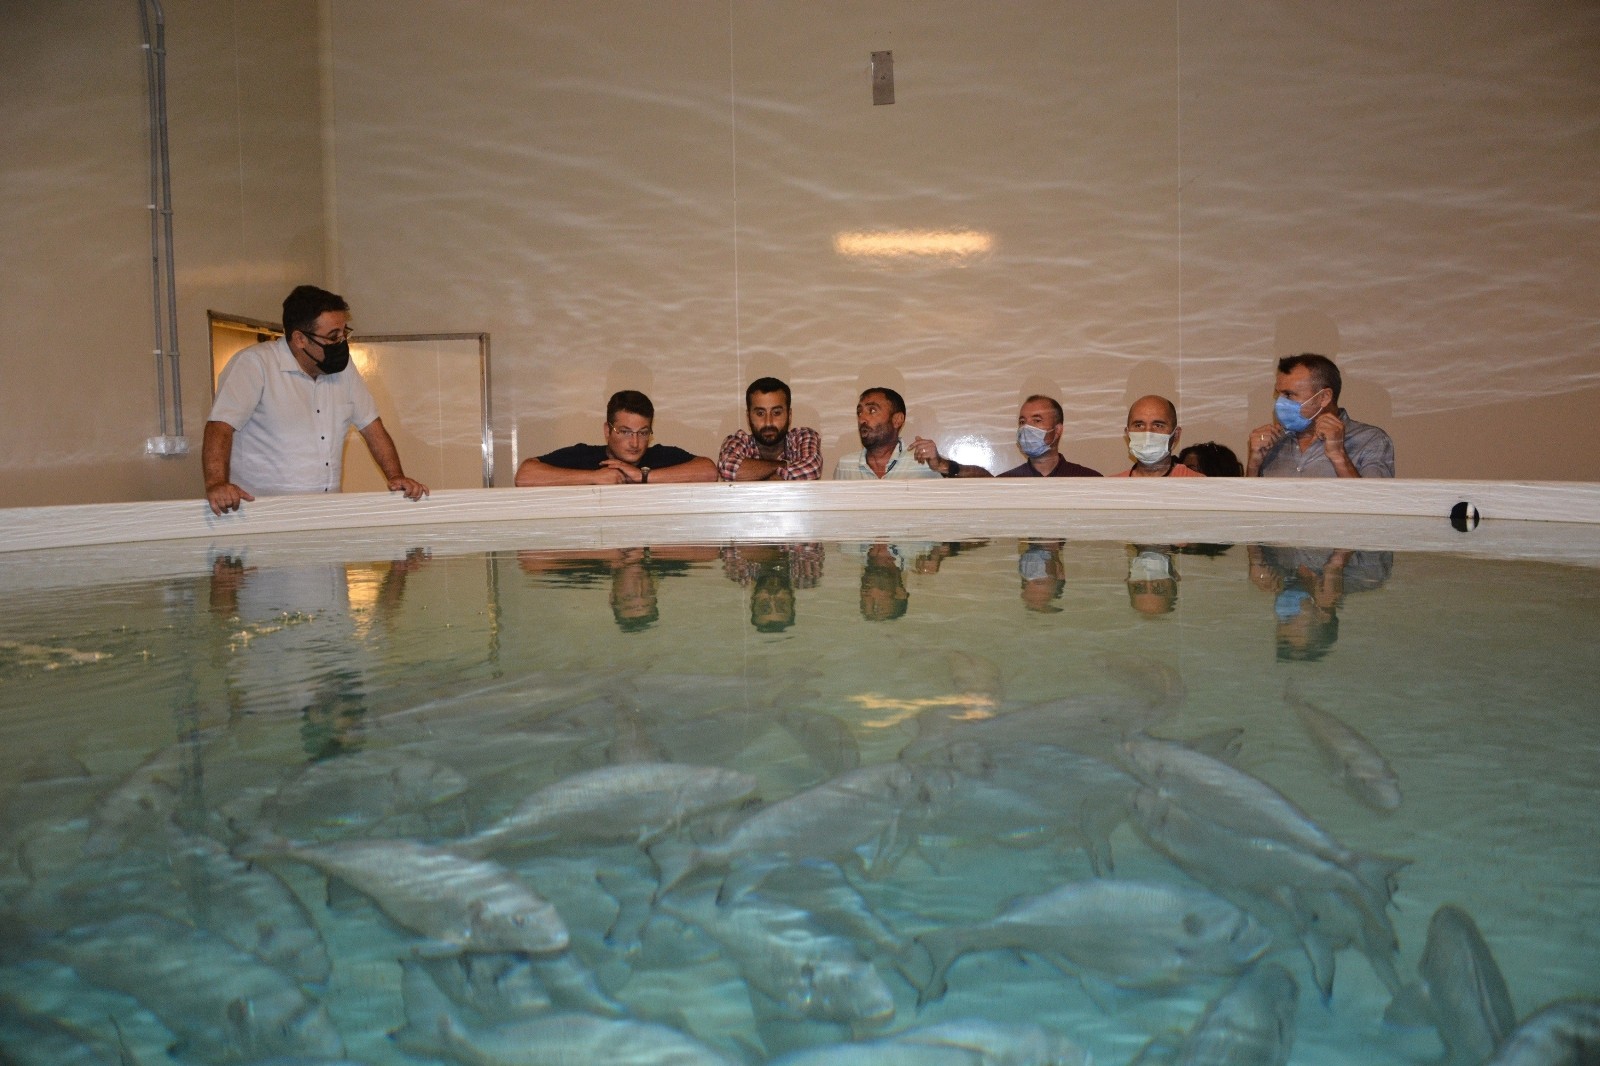 Toprak havuzda balık yetiştiren tesise teknik gezi düzenlendi #aydin